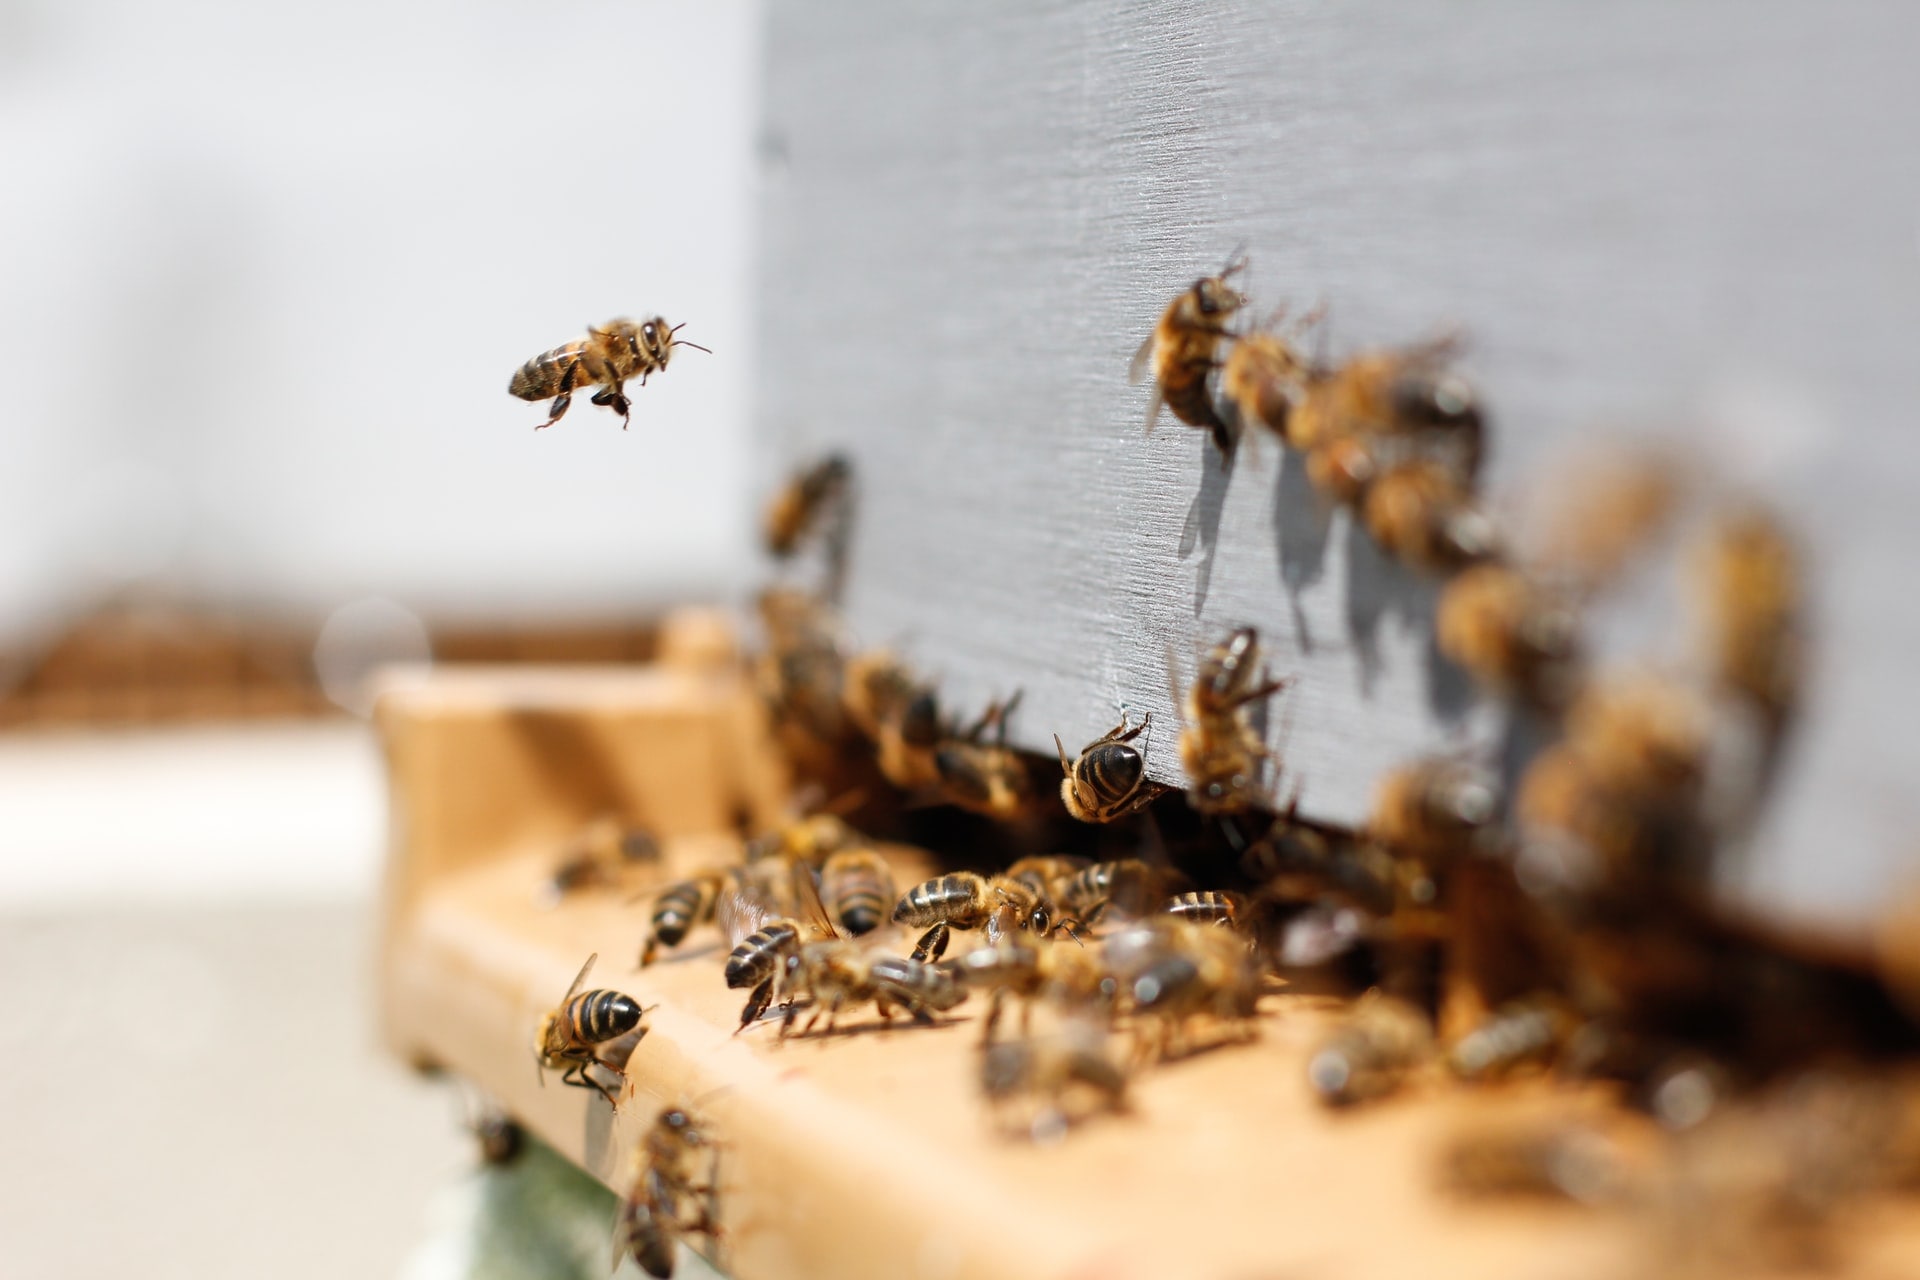 Природа, Происшествия, Томские новости, пчелы смерть пестициды гибель животных экологические происшествия пчелосемьи интересные новости Томс Более 500 пчелосемей погибло в трех районах Томской области, предположительно, от пестицида